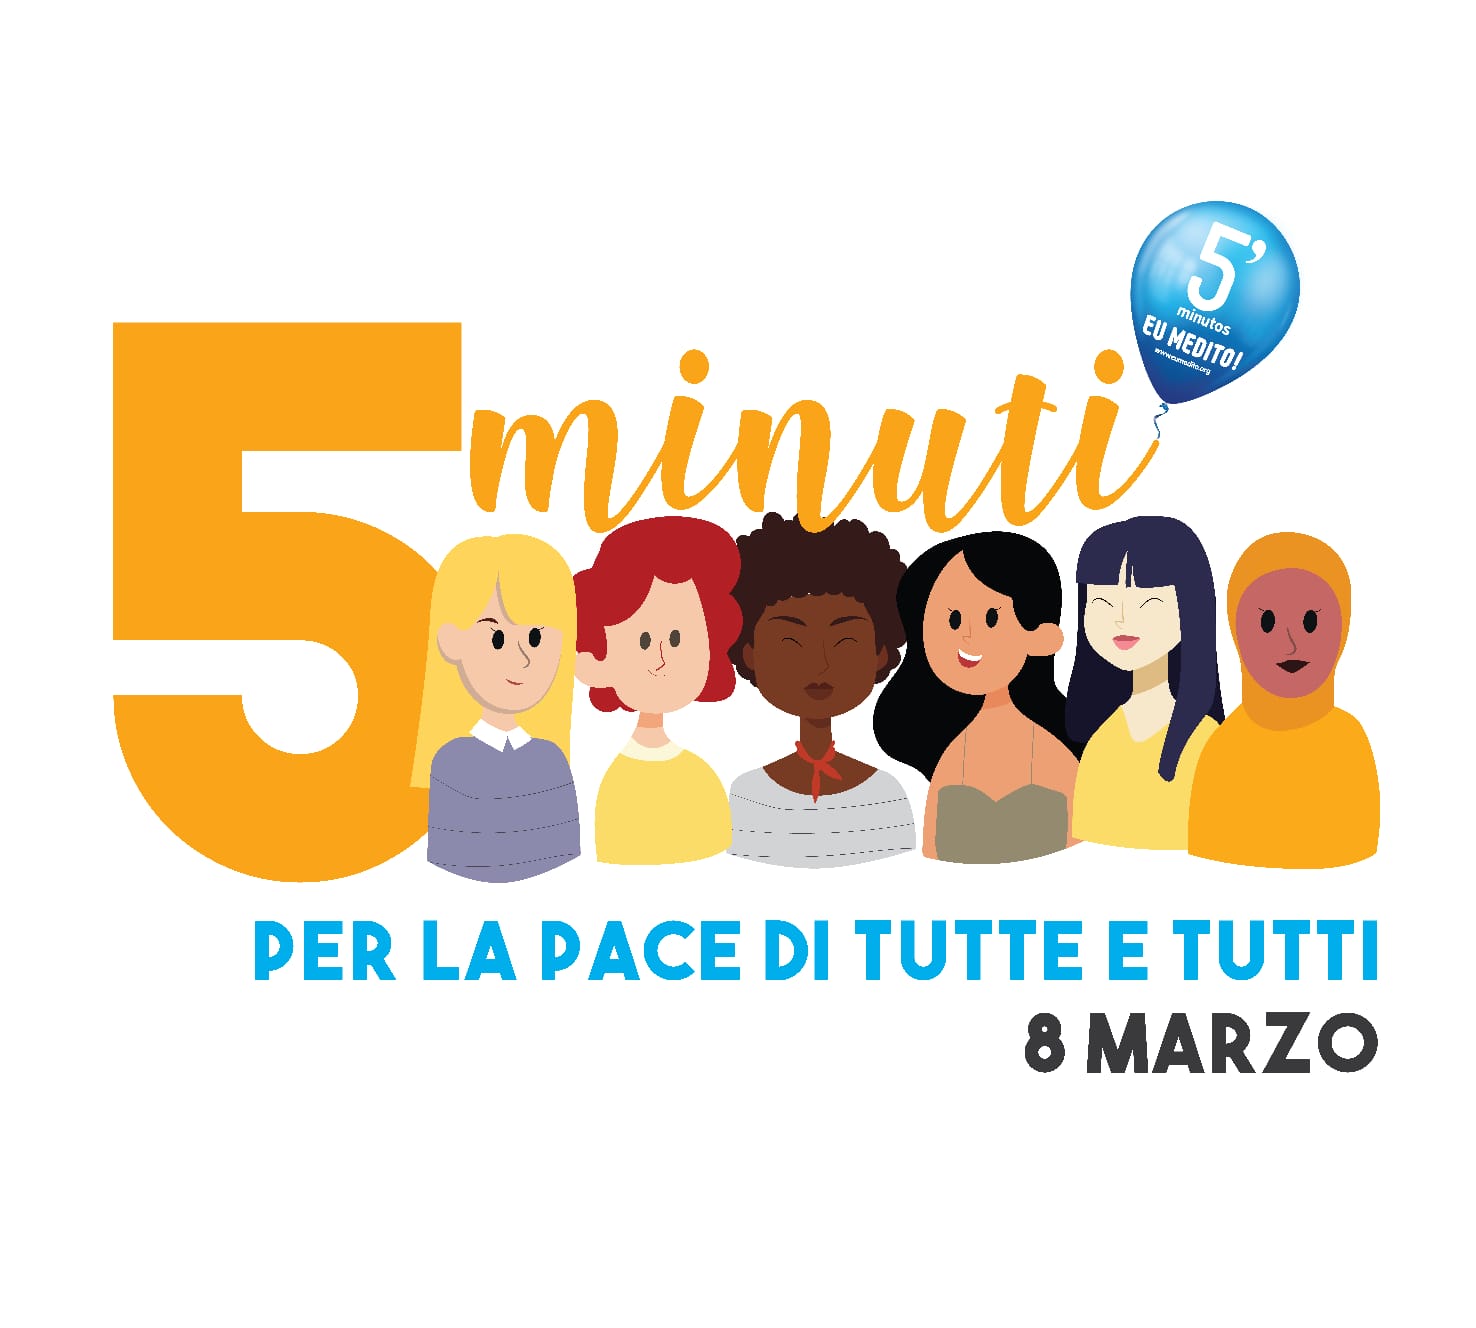 Imola (Bologna) - 5 MINUTI per la Pace di tutte e tutti